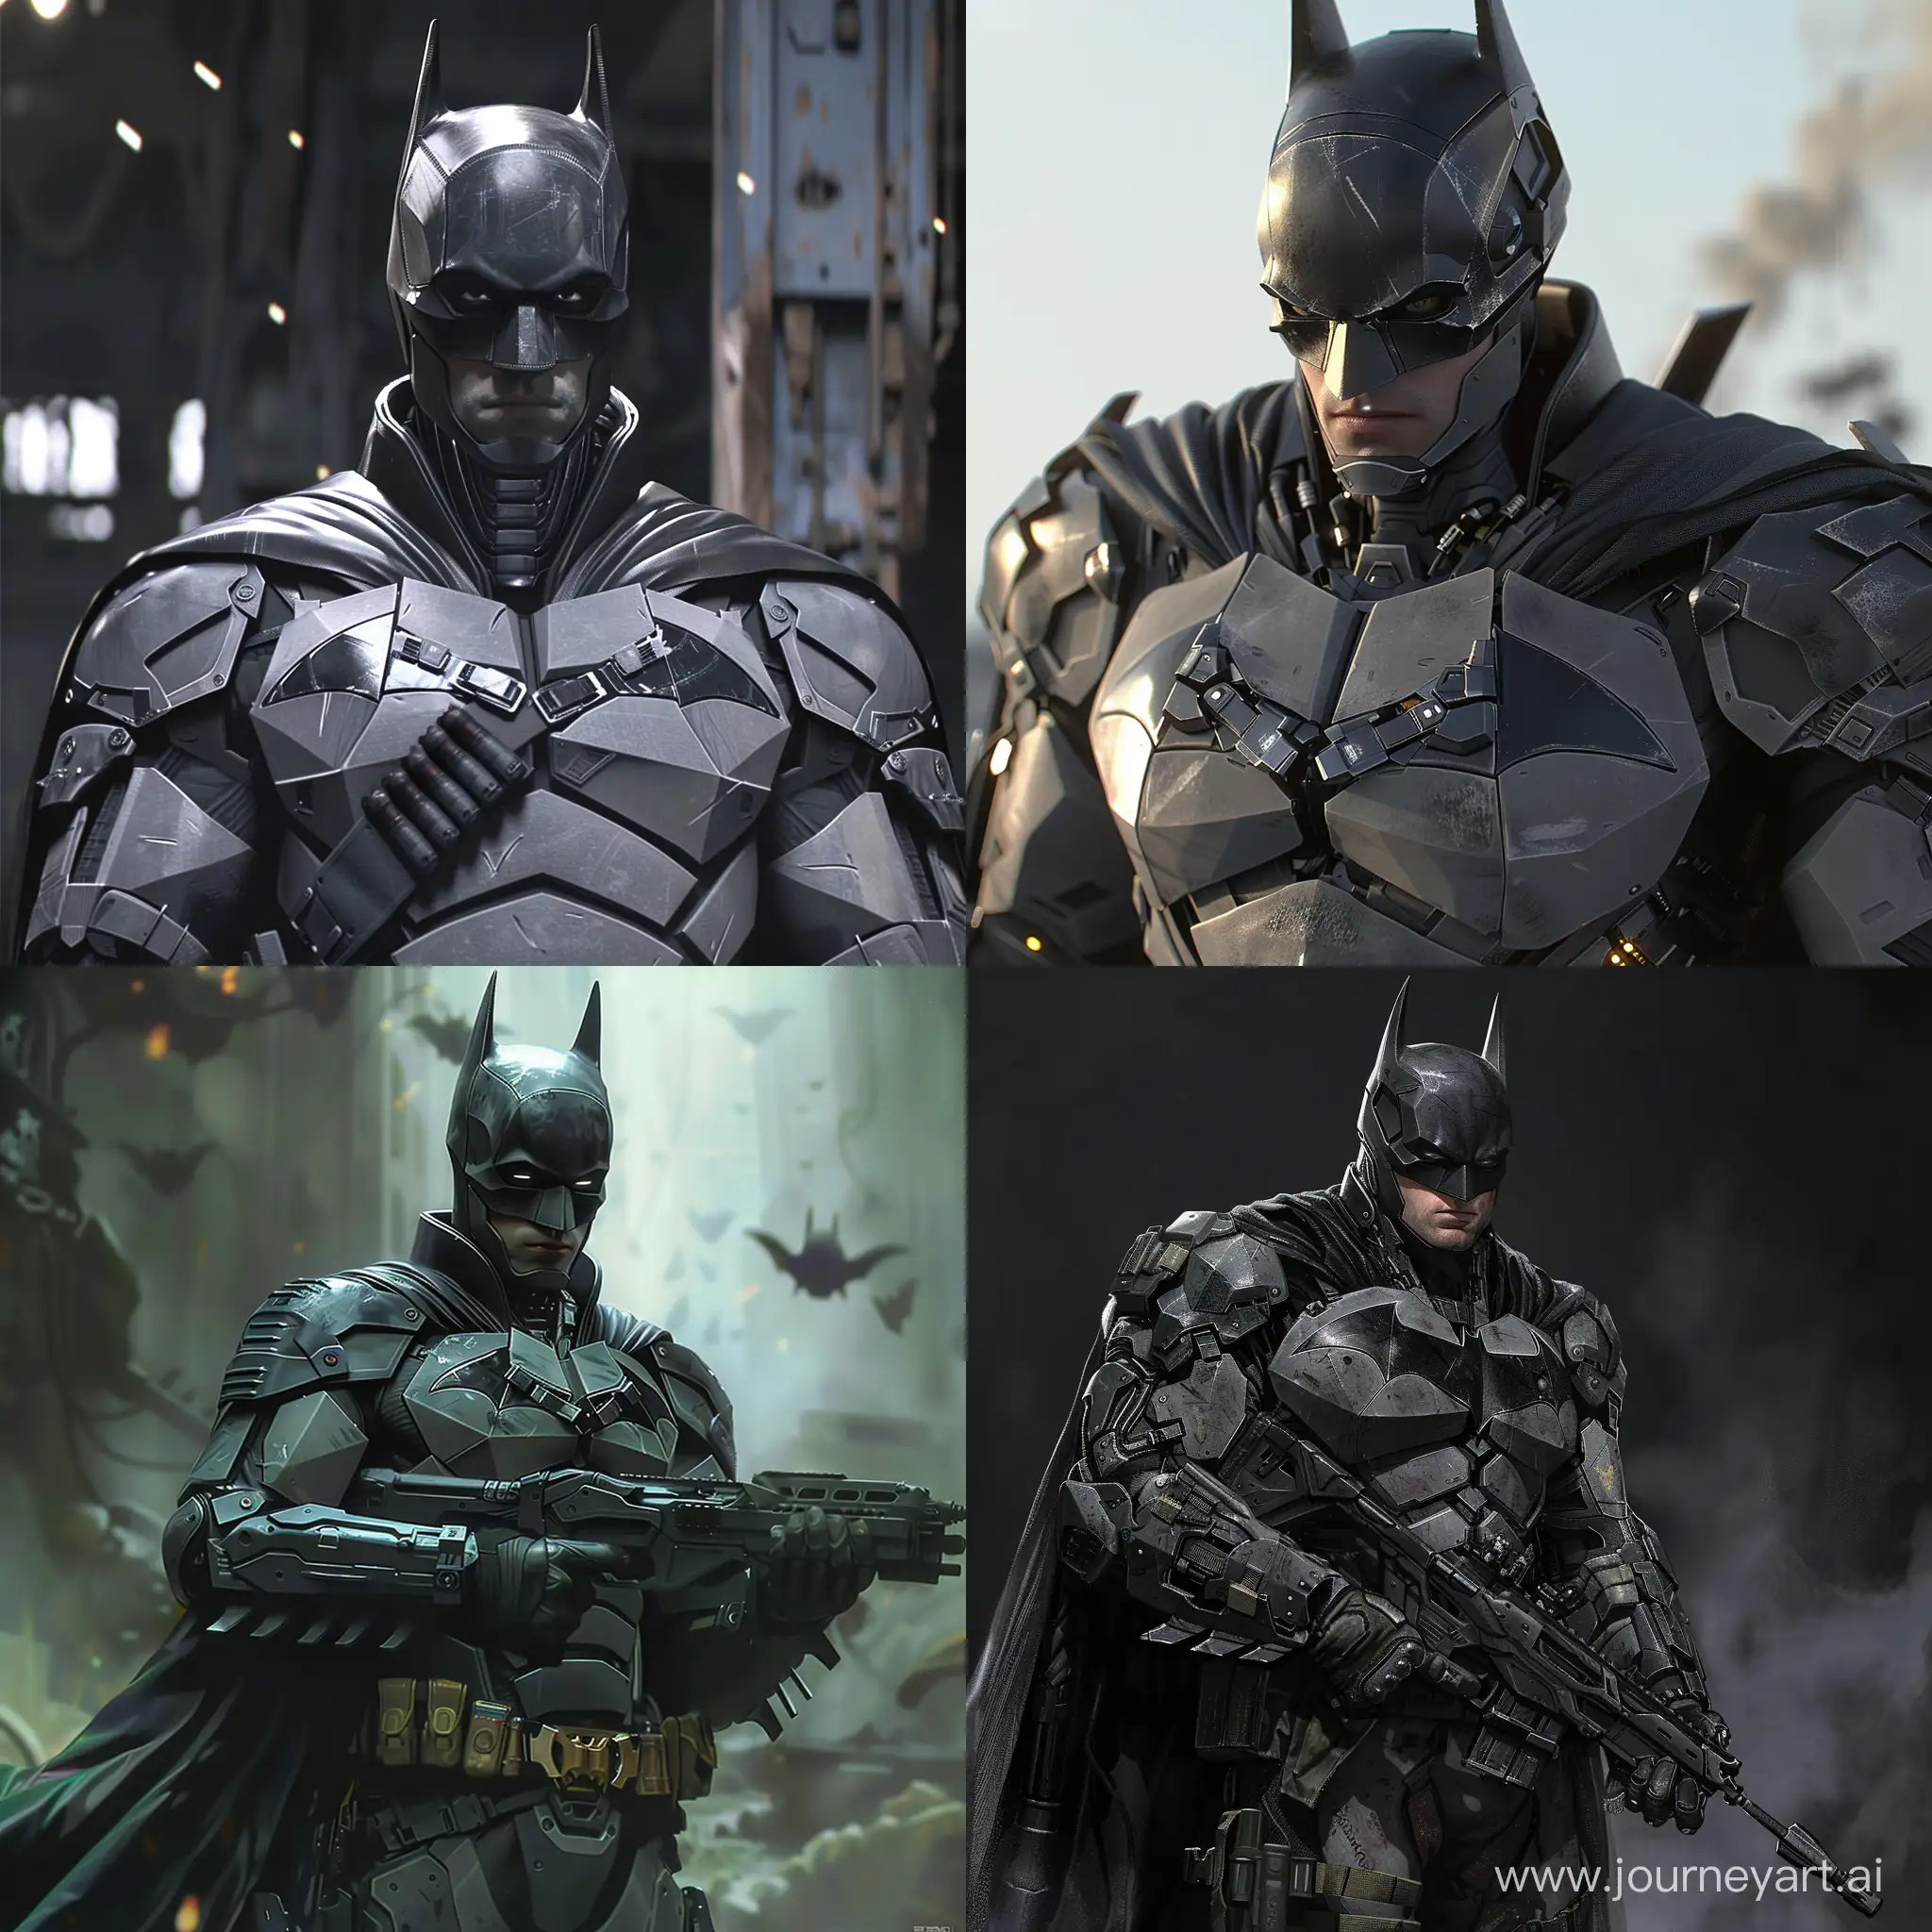 Futuristic-Soldier-Batman-Cybernetic-Defender-in-Futuristic-Armor